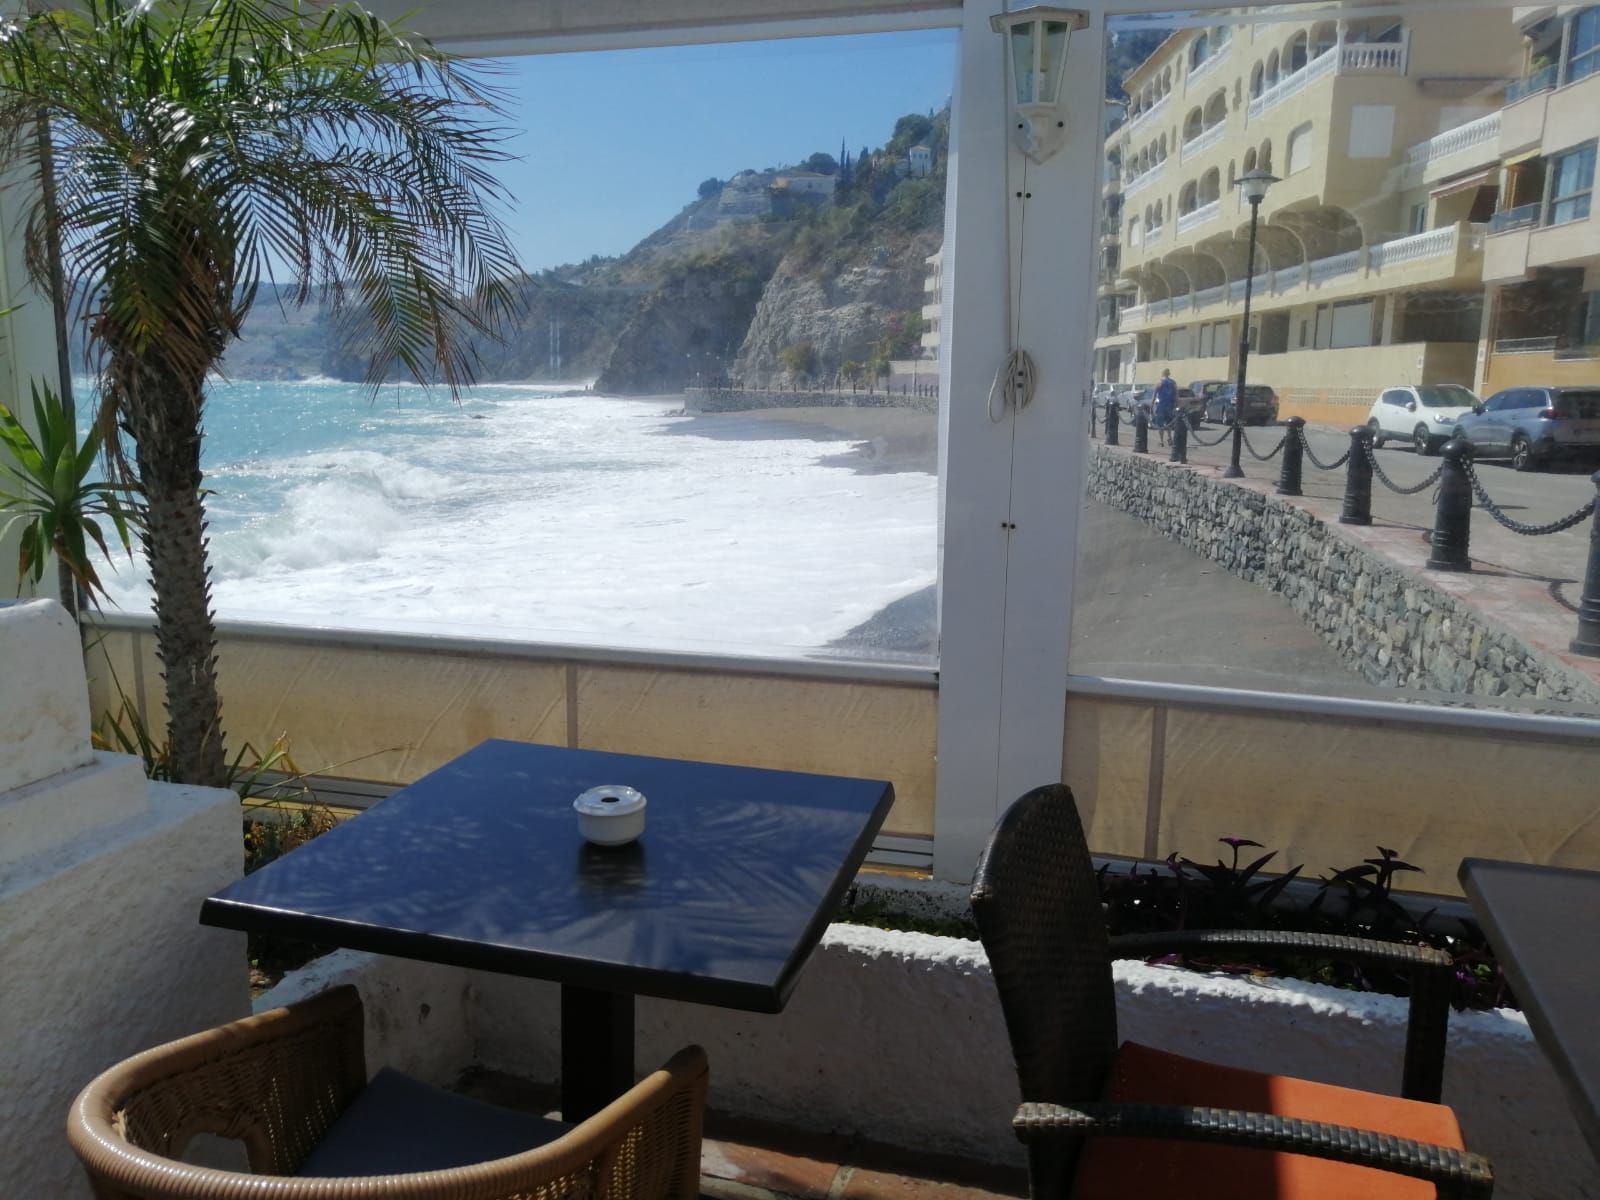 Foto 16 de Restaurante de cocina mediterránea en  | El Balcón de Cotobro